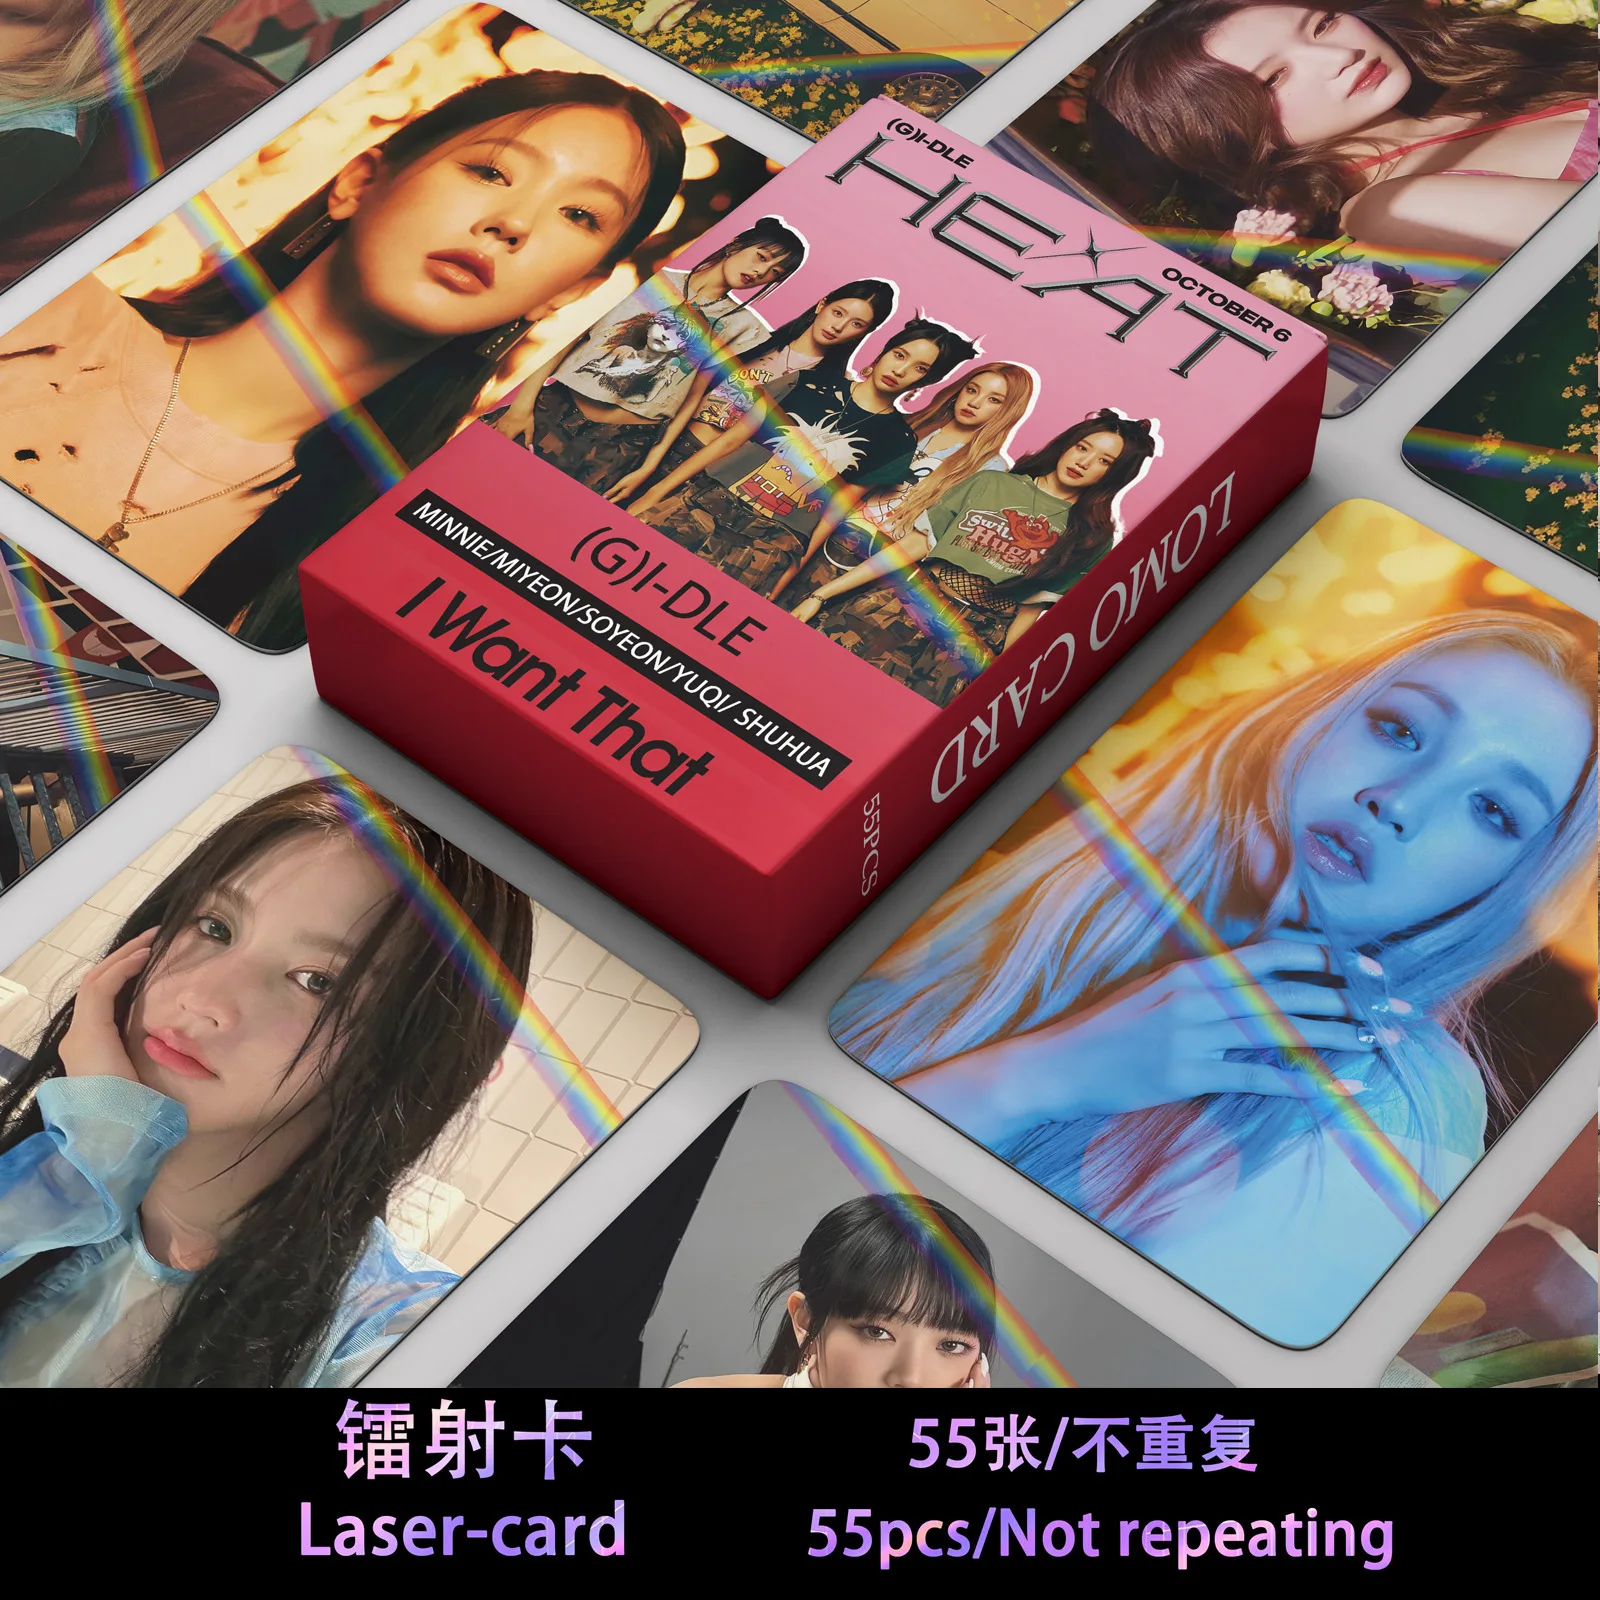 

55 шт./набор Kpop гидл ломо-карты новый альбом горячие лазерные карты HD фотокарты для девочек Фотокарта для любителей коллекционный подарок